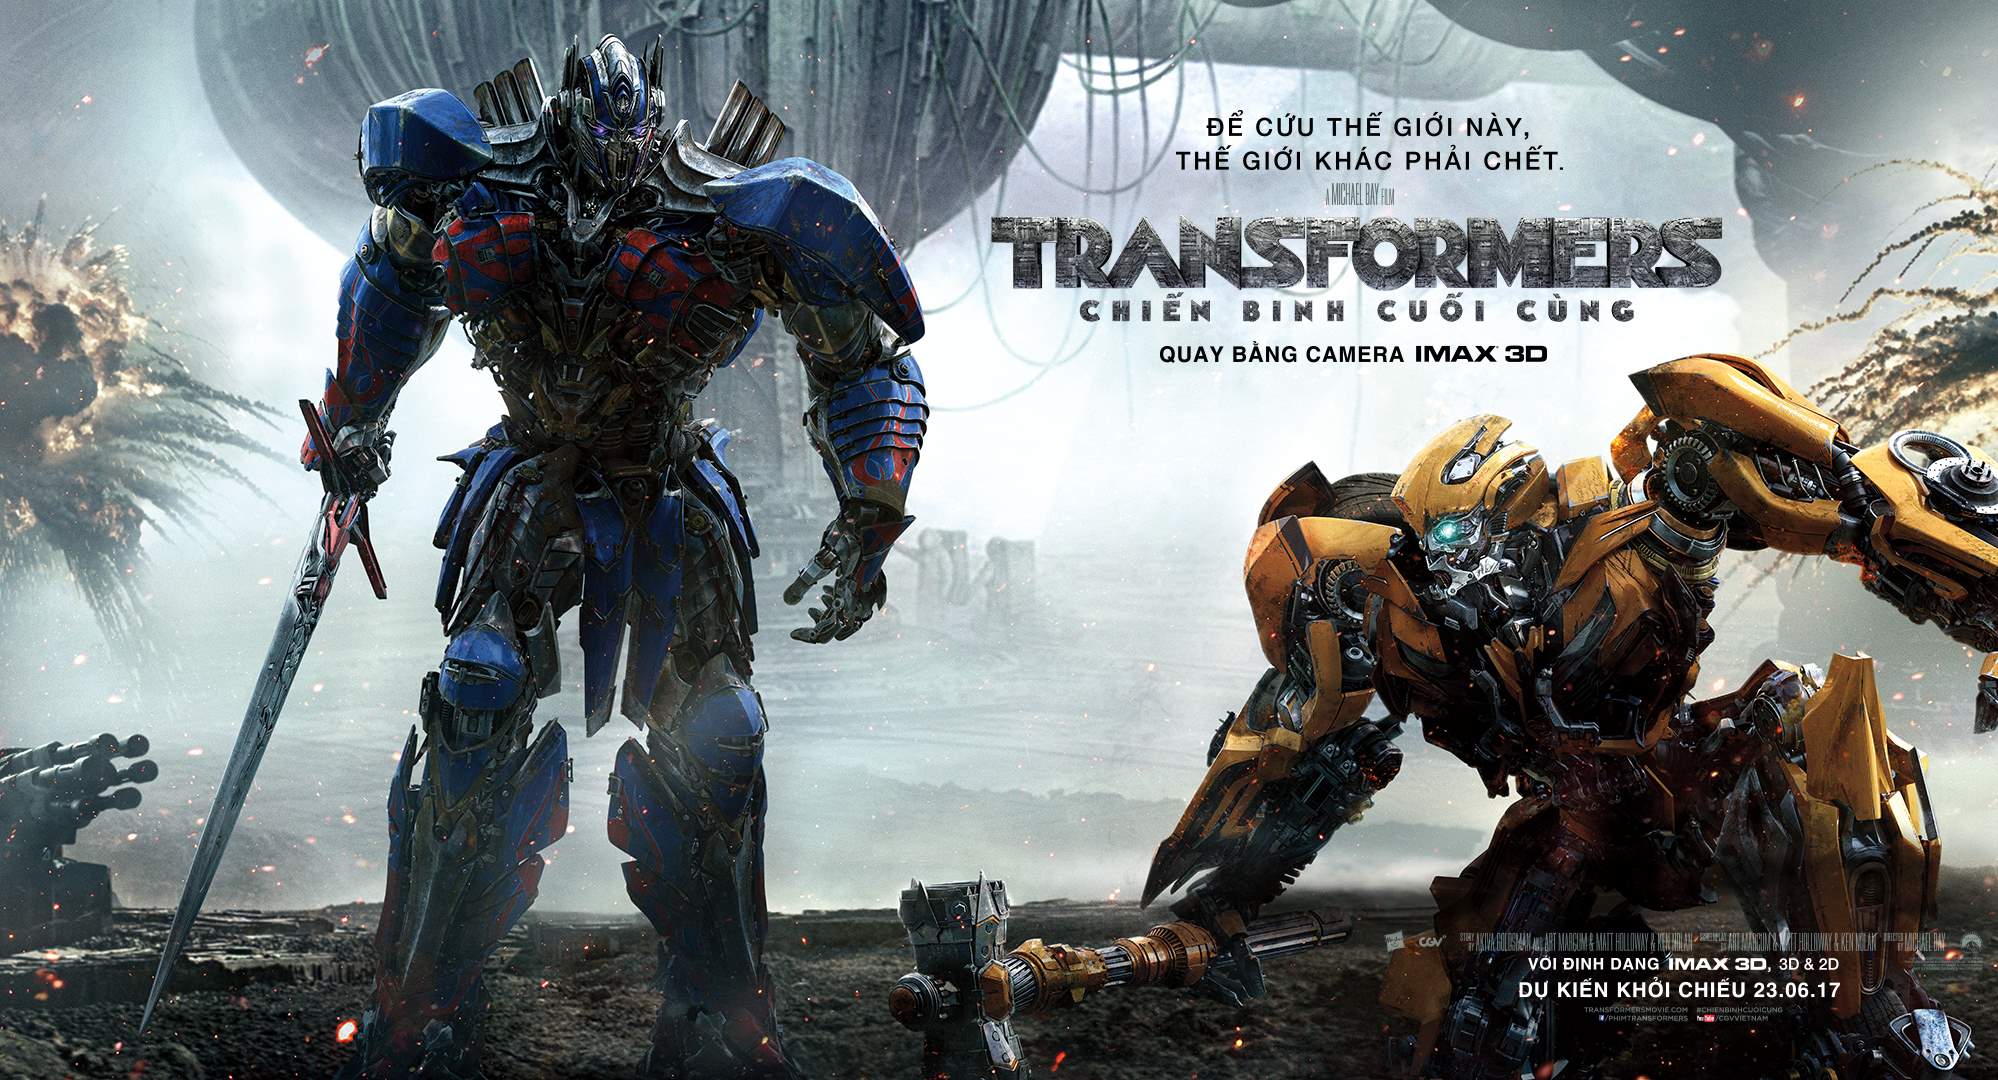 Công chiếu phim Transformers The Last Knight chắc chắn là một điểm sáng của năm 2017 với những trận chiến ác liệt và những nhân vật đầy ma lực. Nếu bạn là fan của bộ phim này, hãy xem những hình ảnh tuyệt vời liên quan đến công chiếu phim này. Chúng sẽ khiến bạn cảm thấy háo hức và mong muốn được xem lại bộ phim này ngay lập tức.